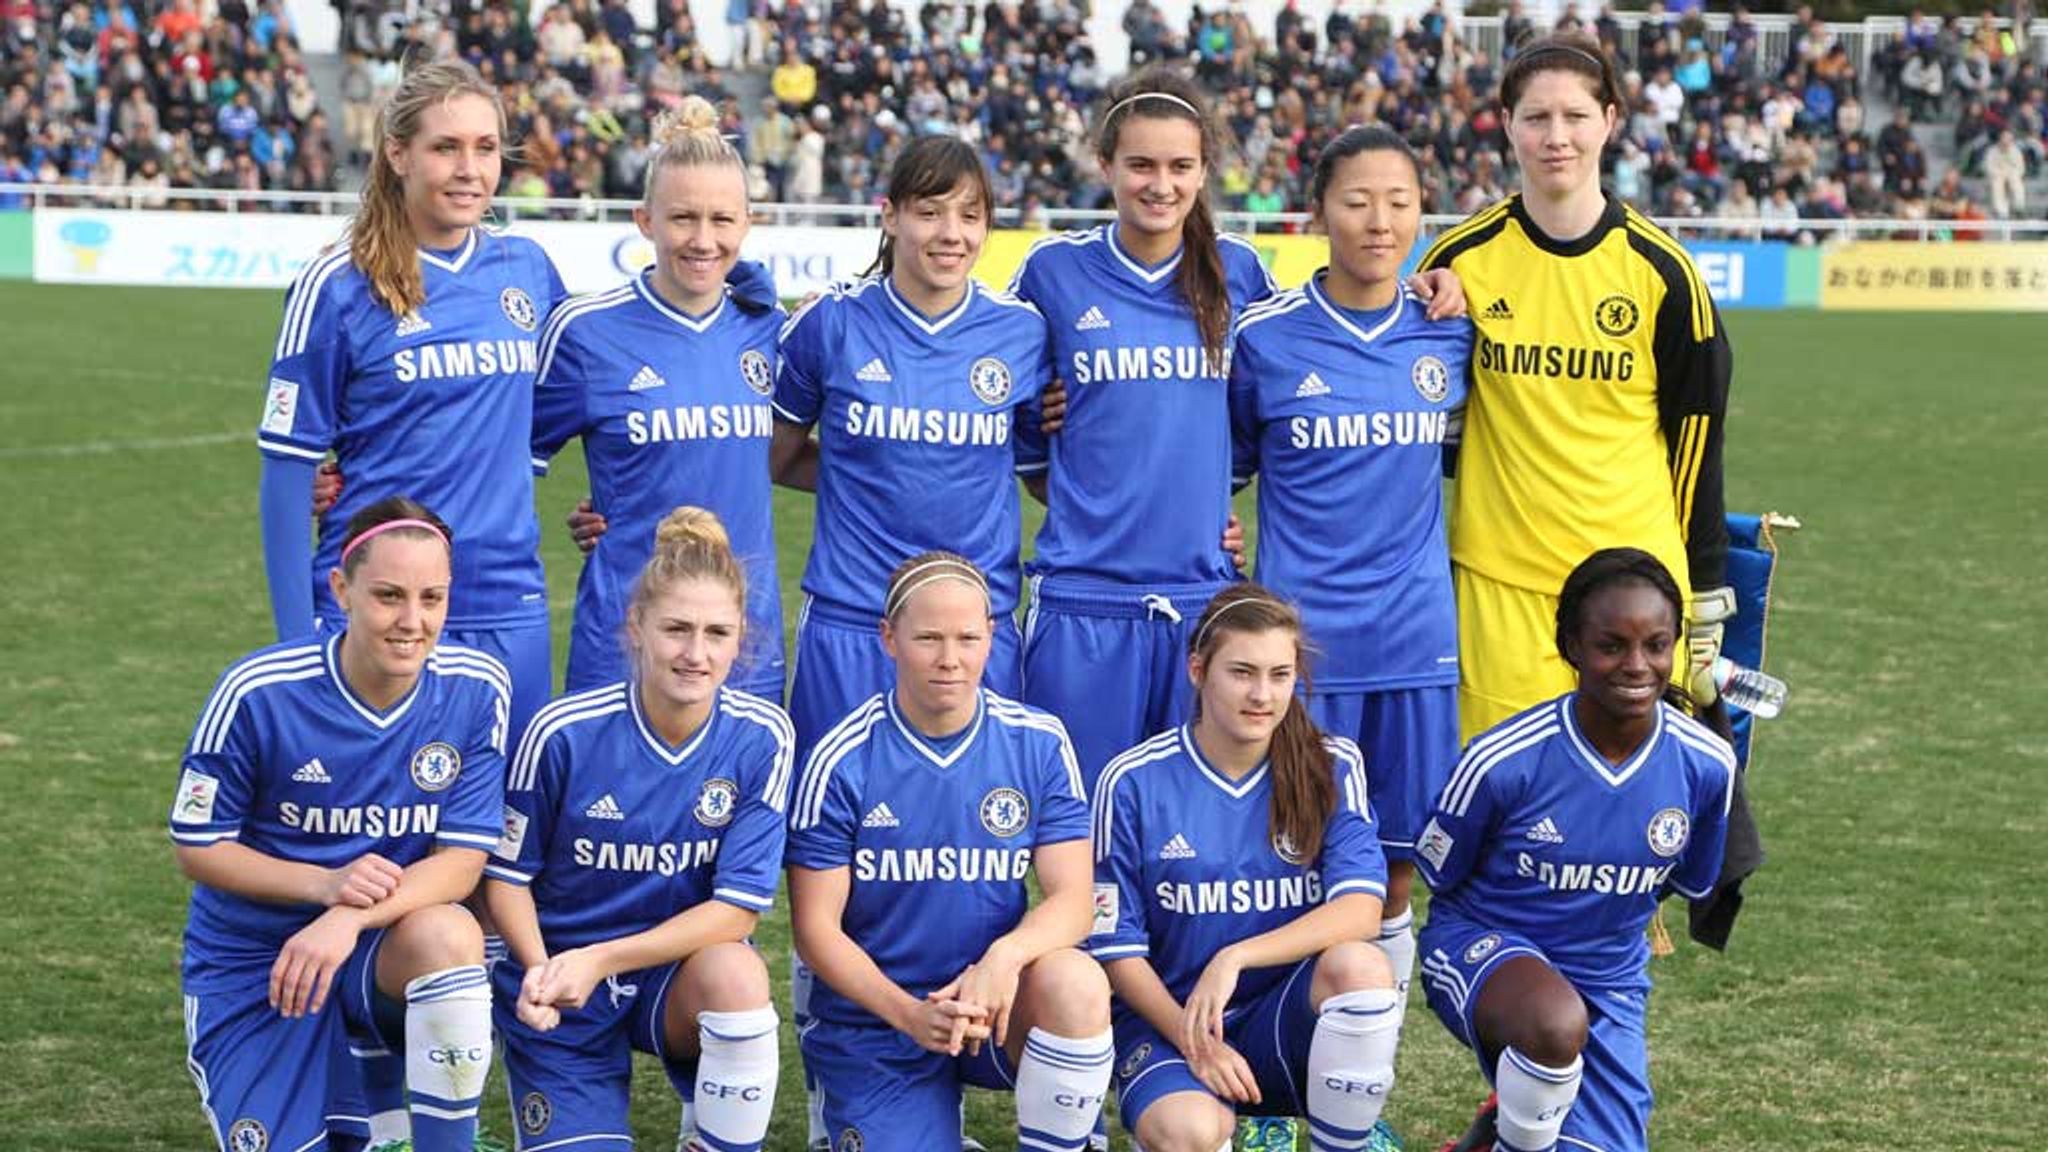 Chelsea Ladies Beaten In Final Of International Womens Club